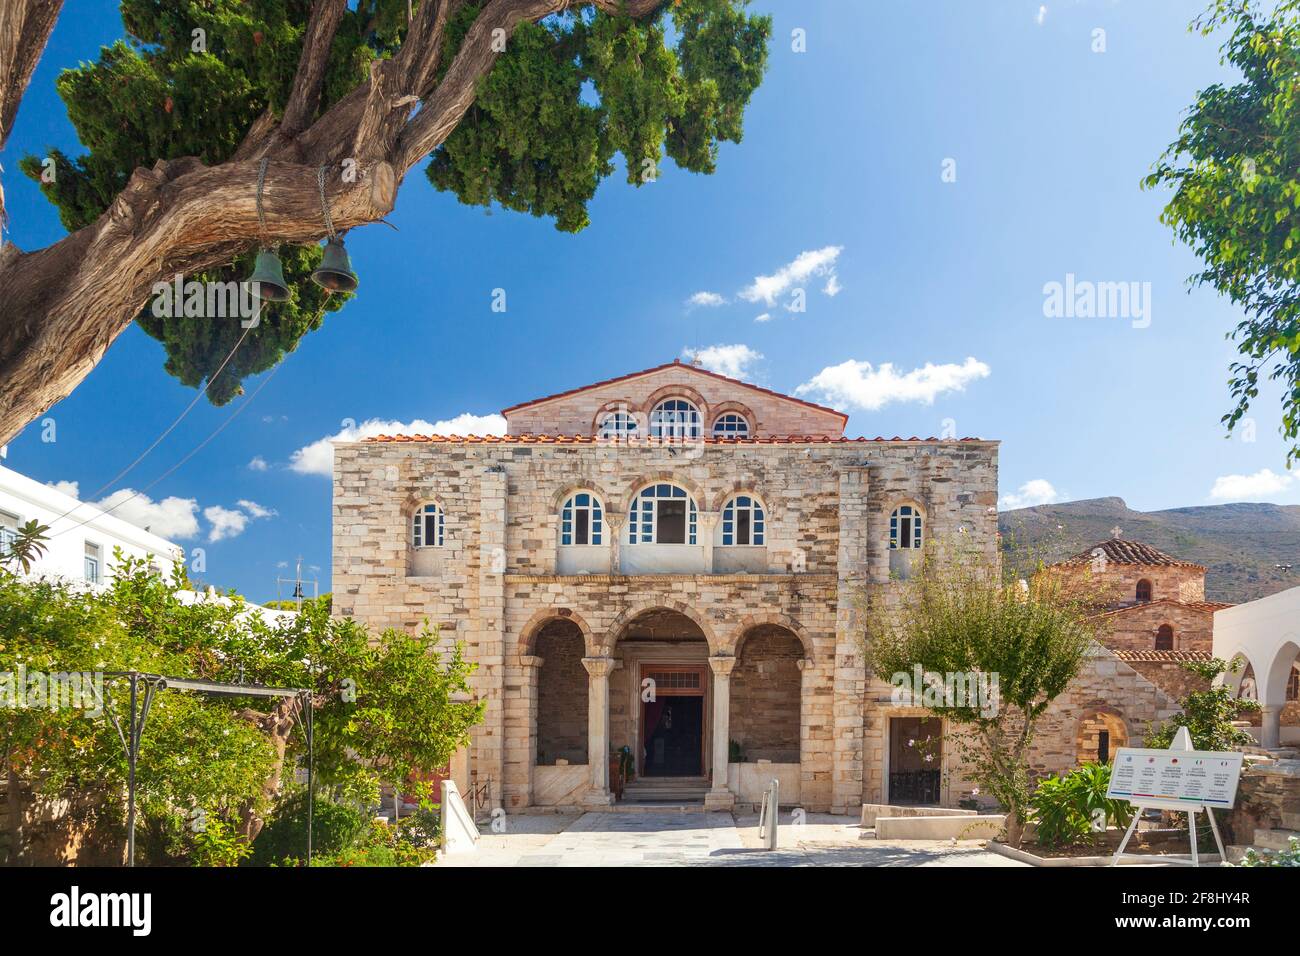 Le monastère byzantin de Panagia Ekatontapiliani (4th c AC) à Paroikia de Paros, Grèce. C'est un important pèlerinages religieux en Grèce. Banque D'Images